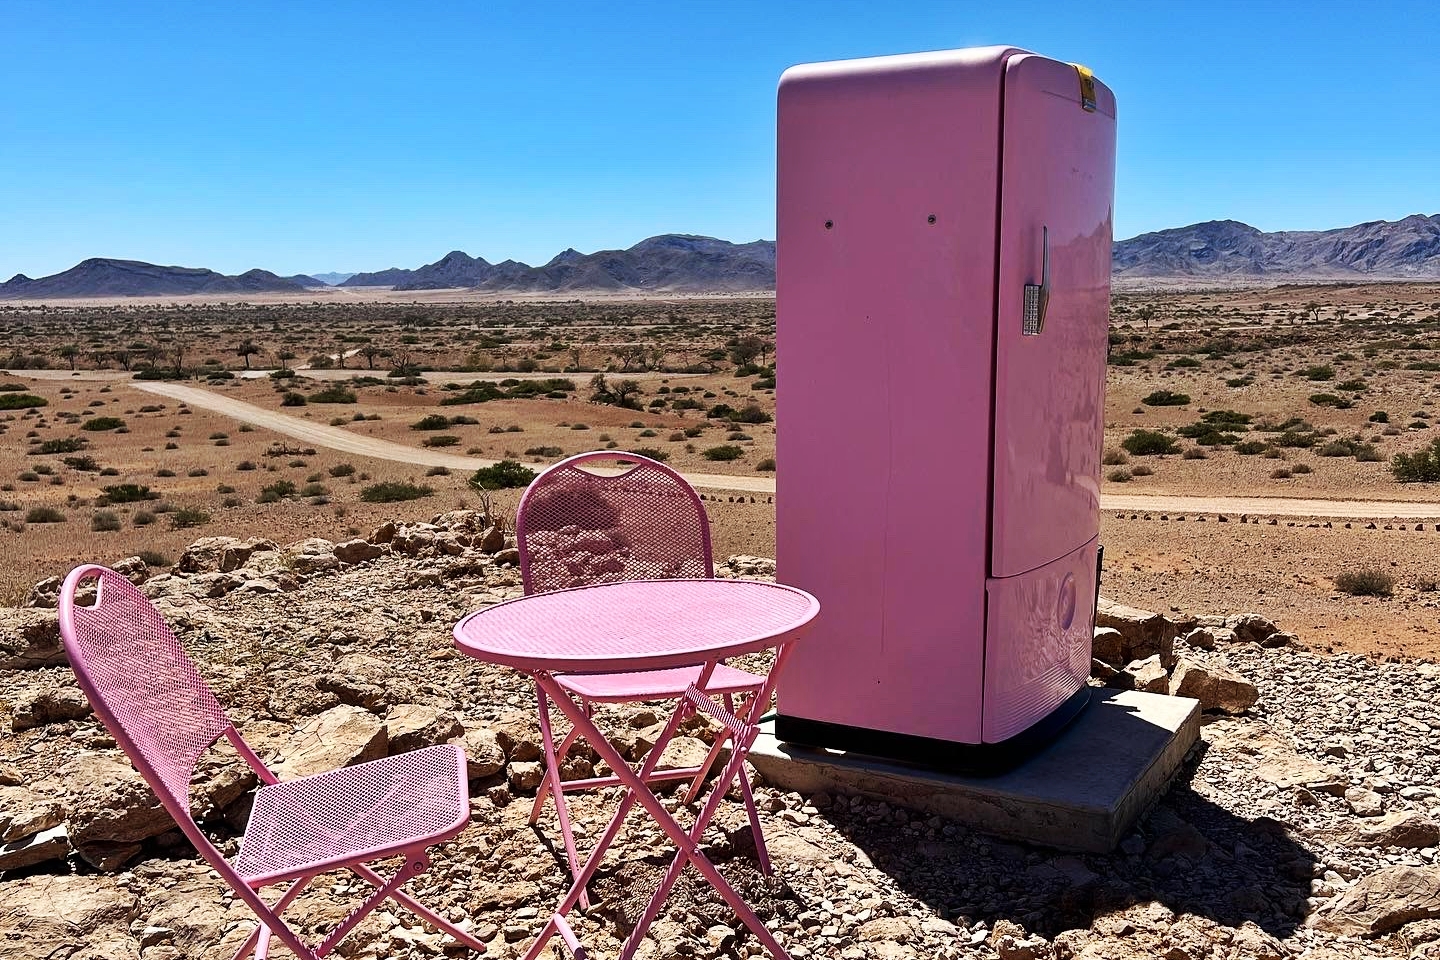 The Unbelievable Pink Fridge in the Namibian Desert